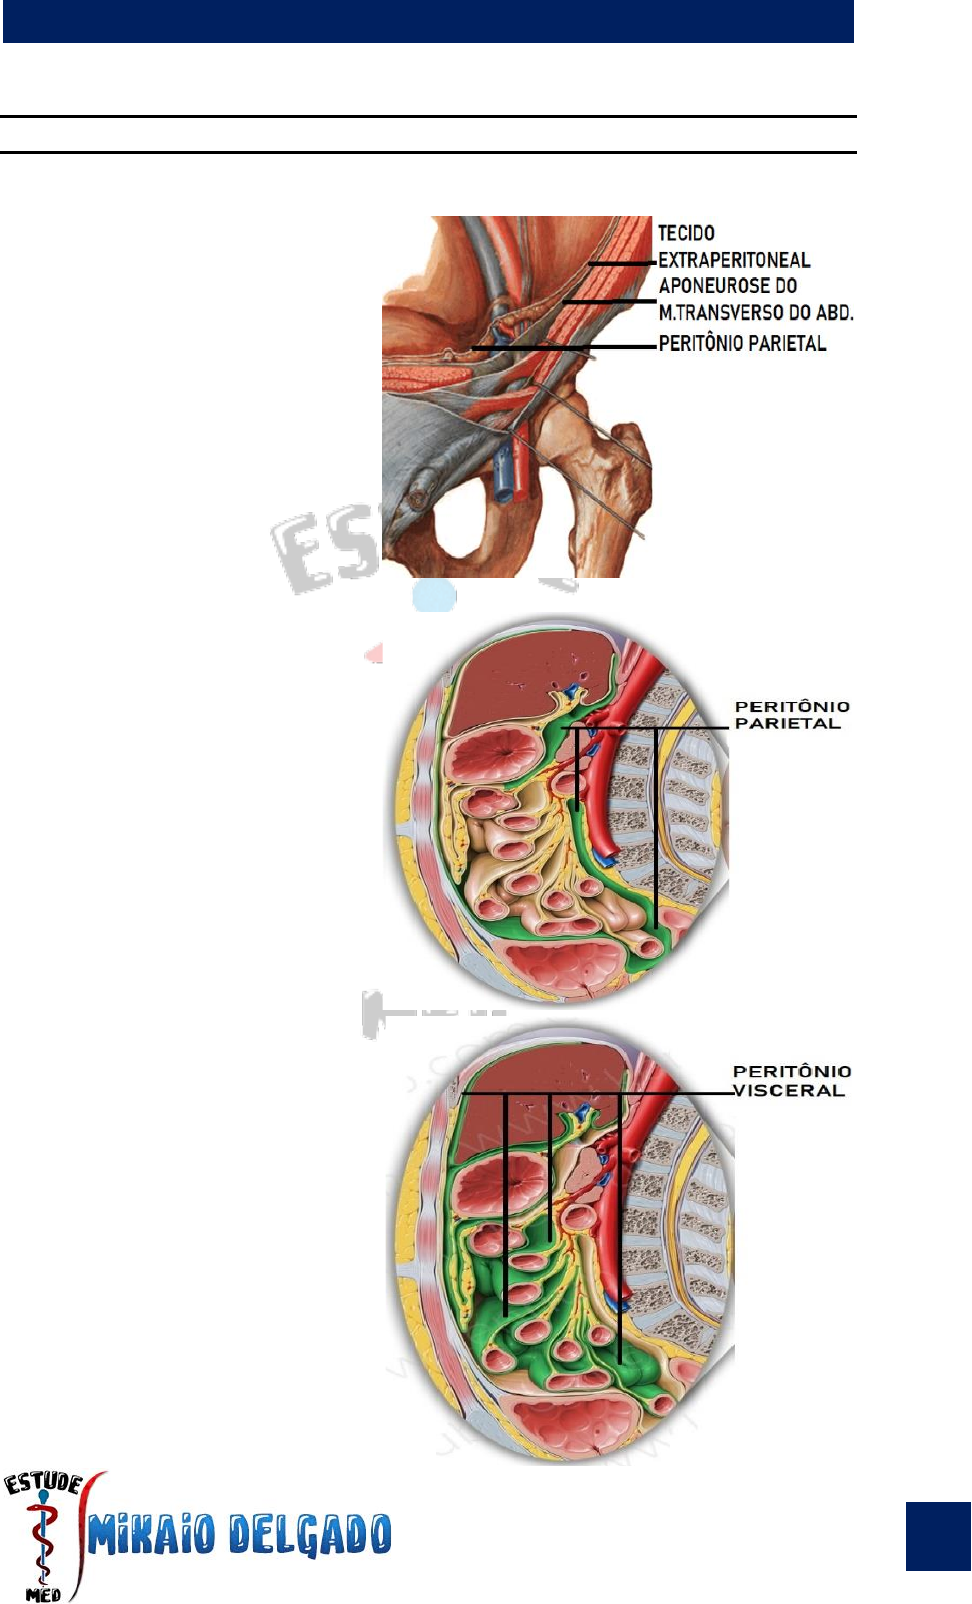 Peritônio e cavidade peritoneal: Anatomia e Função